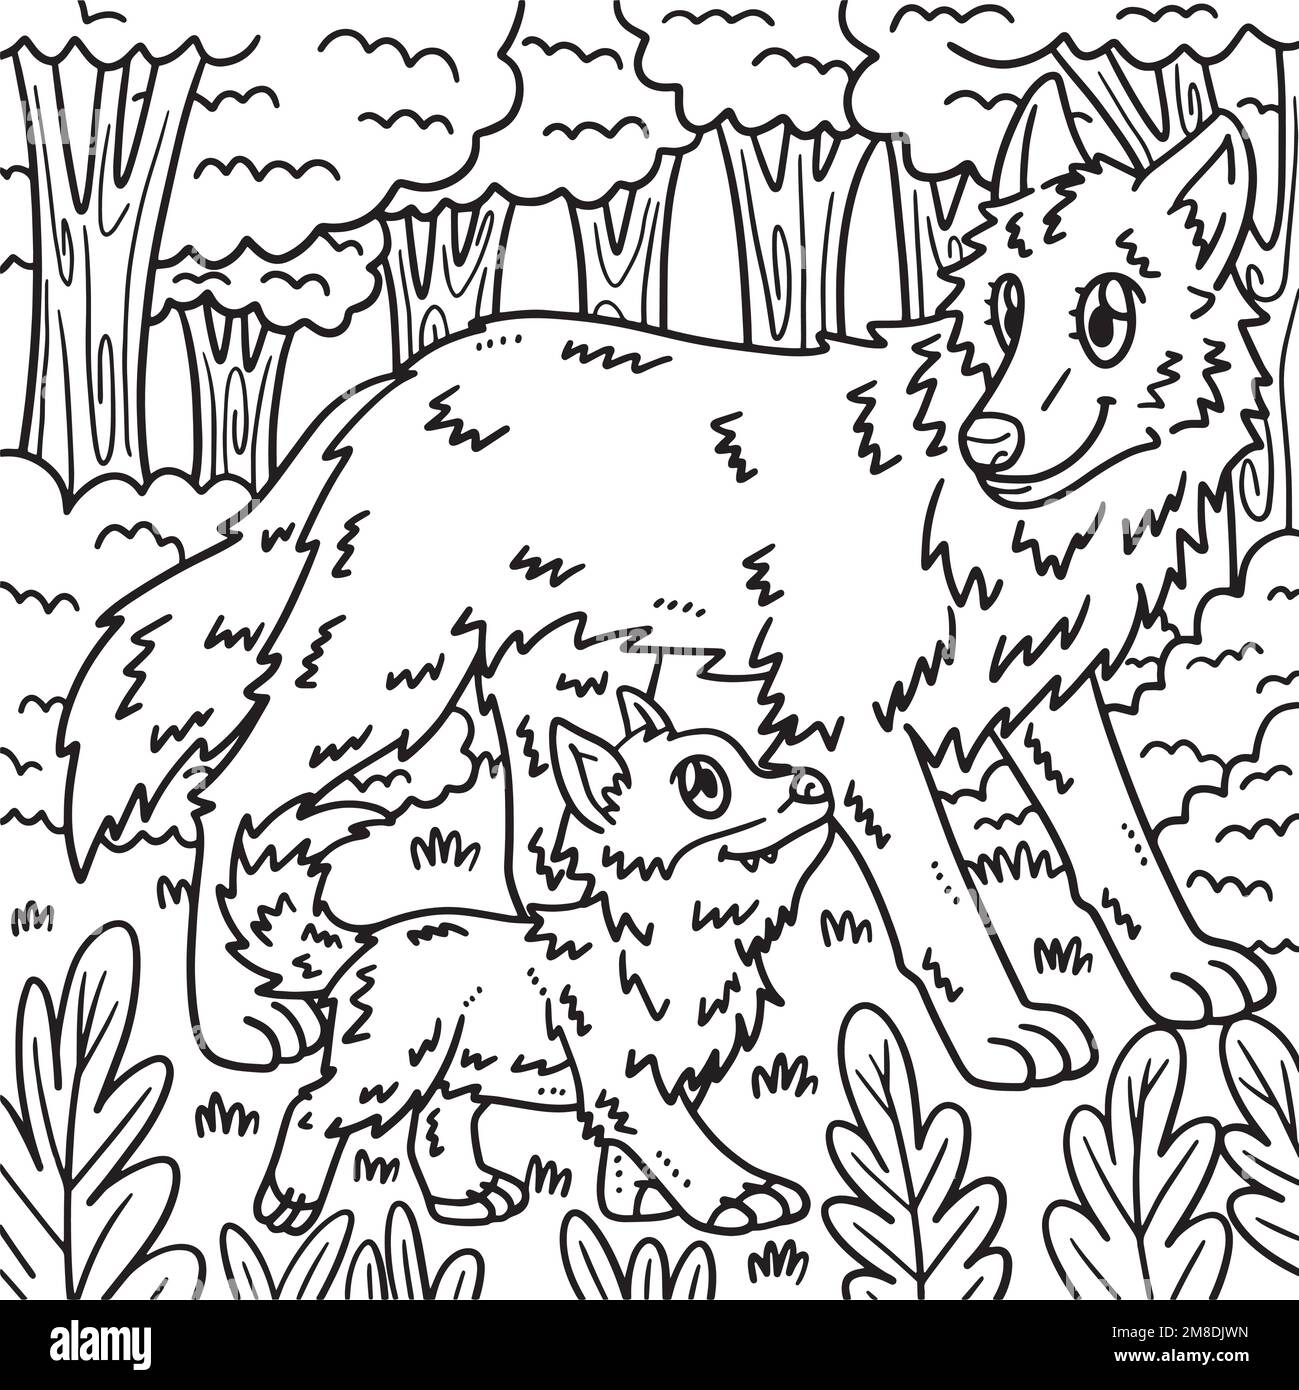 Pagina da colorare di lupo materno e lupo bambino per i bambini Illustrazione Vettoriale